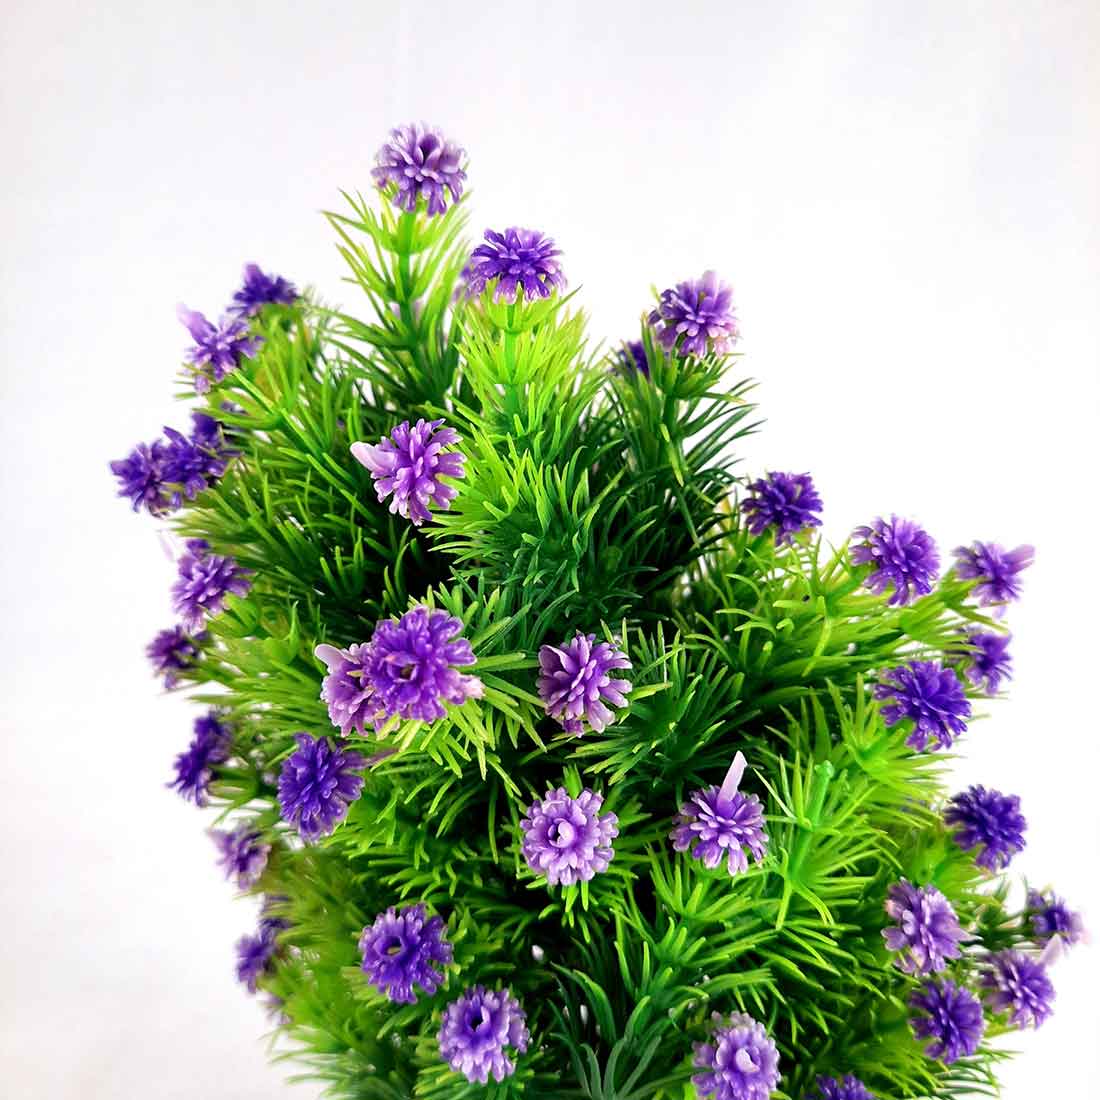 Artificial Flower With Pot- Apkamart #color_Purple